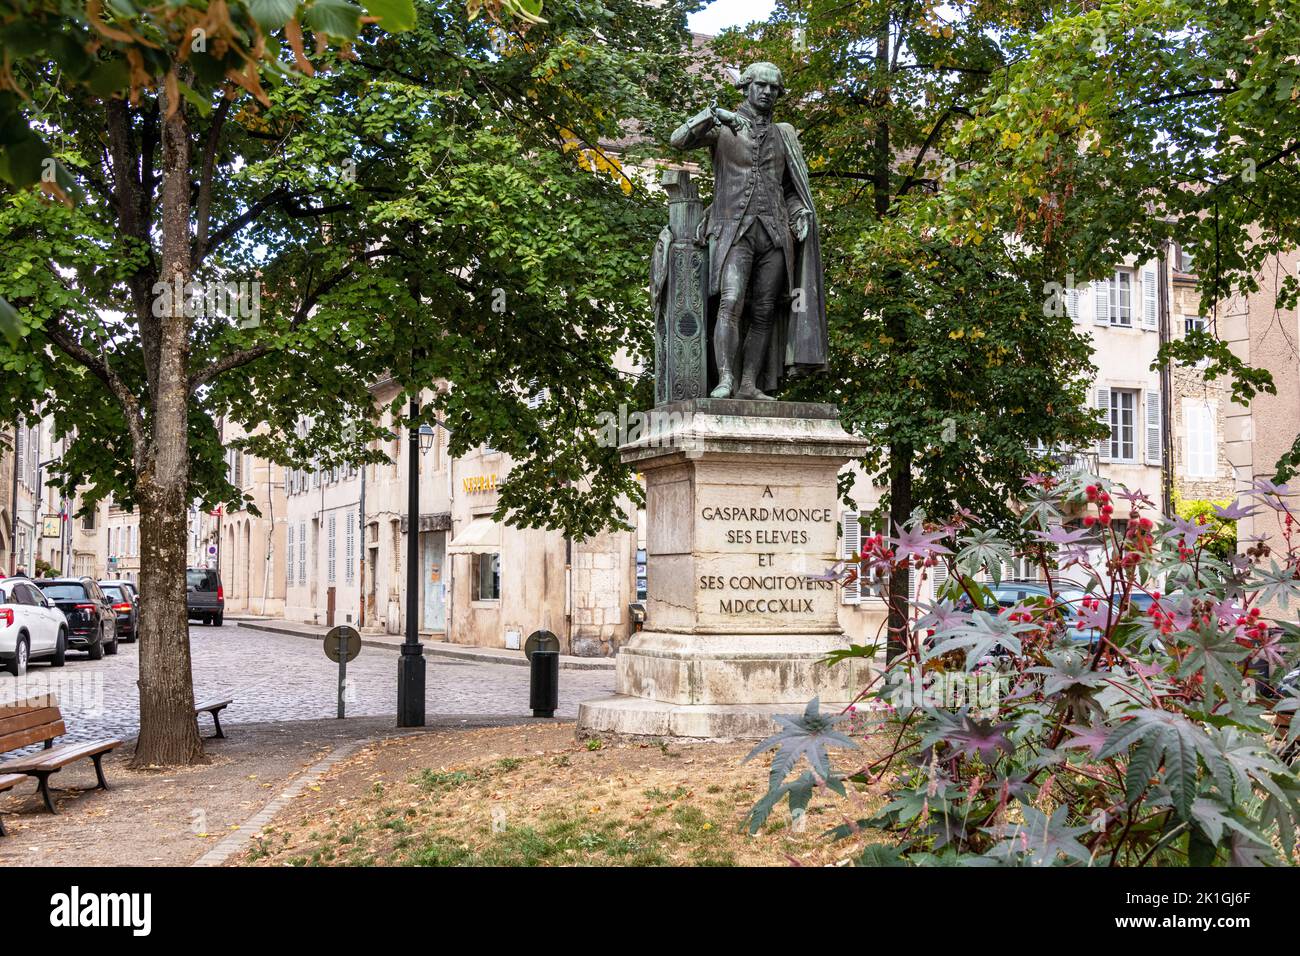 Une statue de Gaspard Monge mathématicien, Beaune, Bourgogne France. Banque D'Images